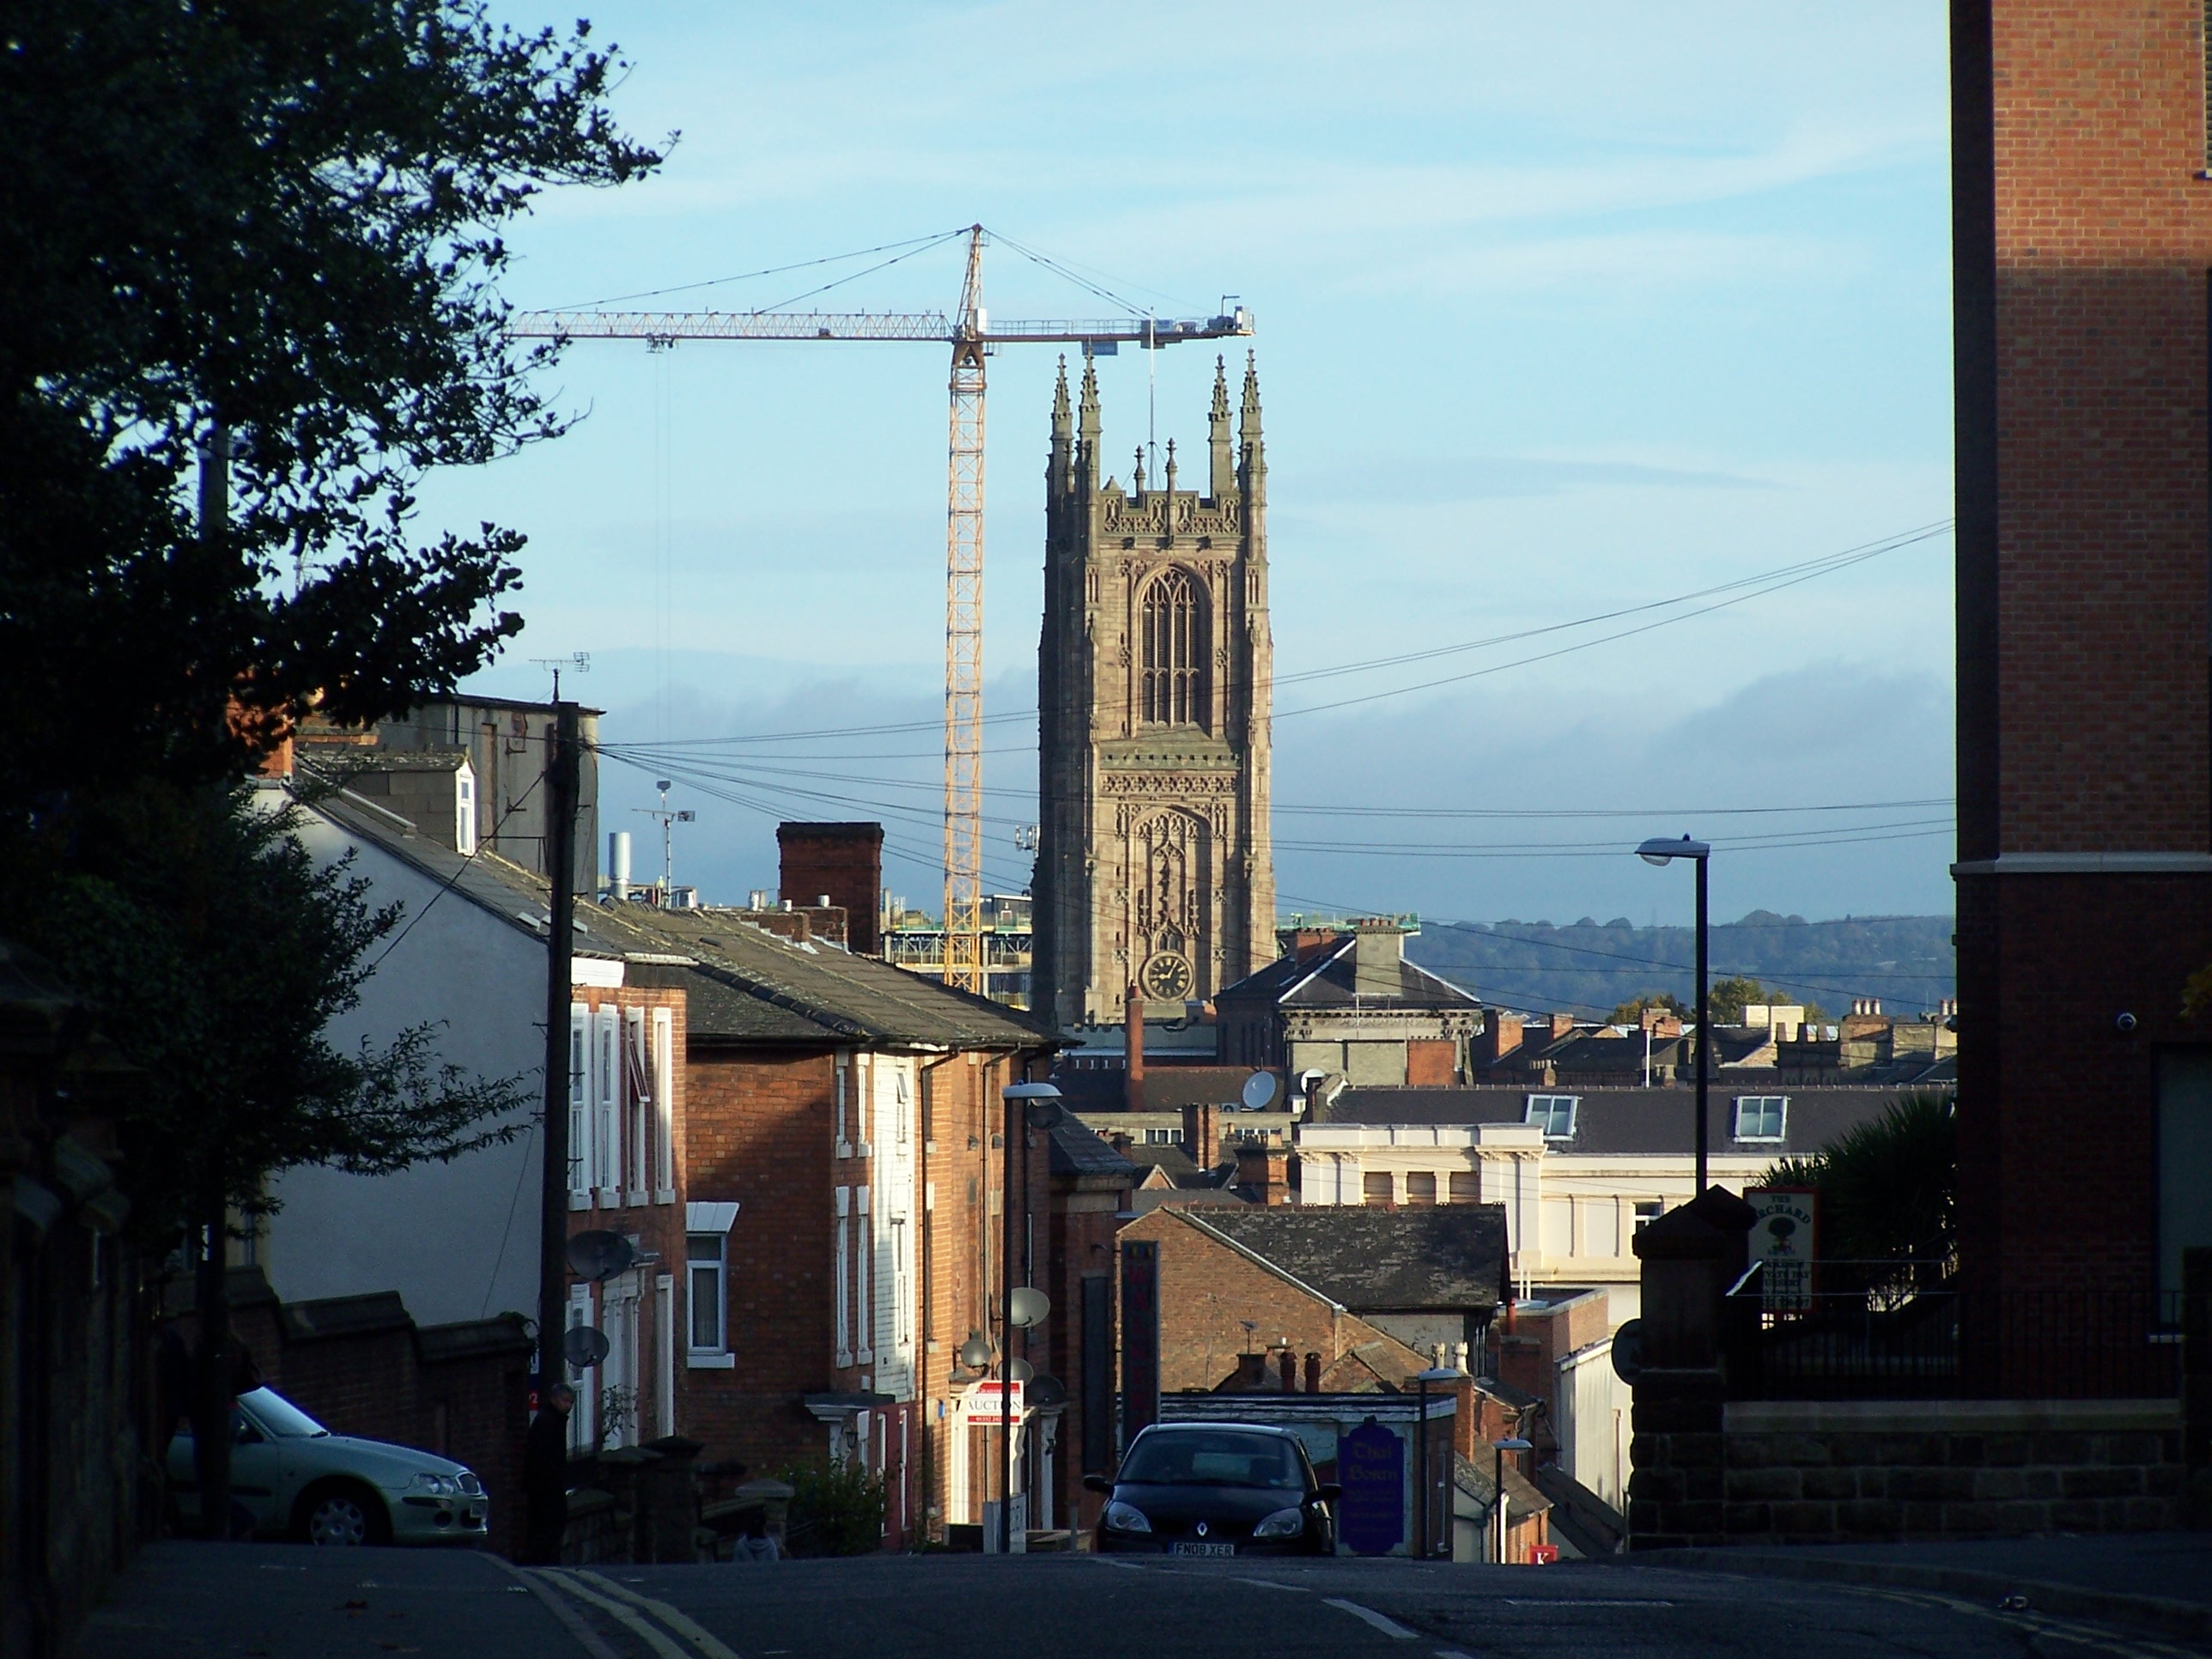 Vista da cidade e da torre da Catedral de Green Lane no condado de derbyshire